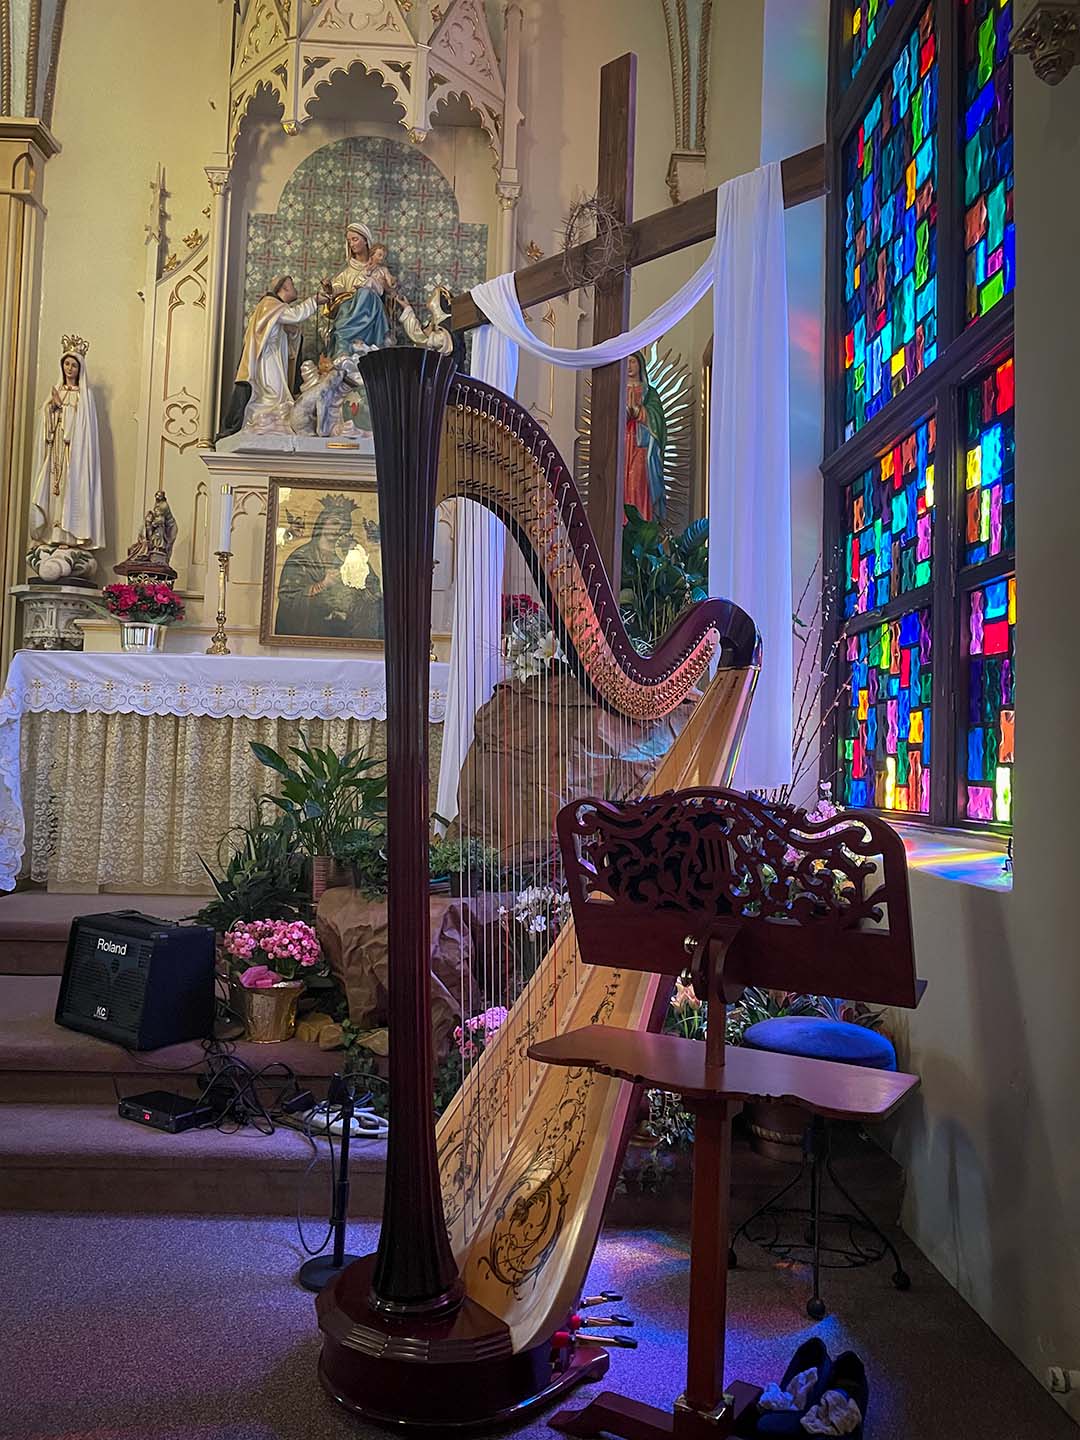 Harp in a Church